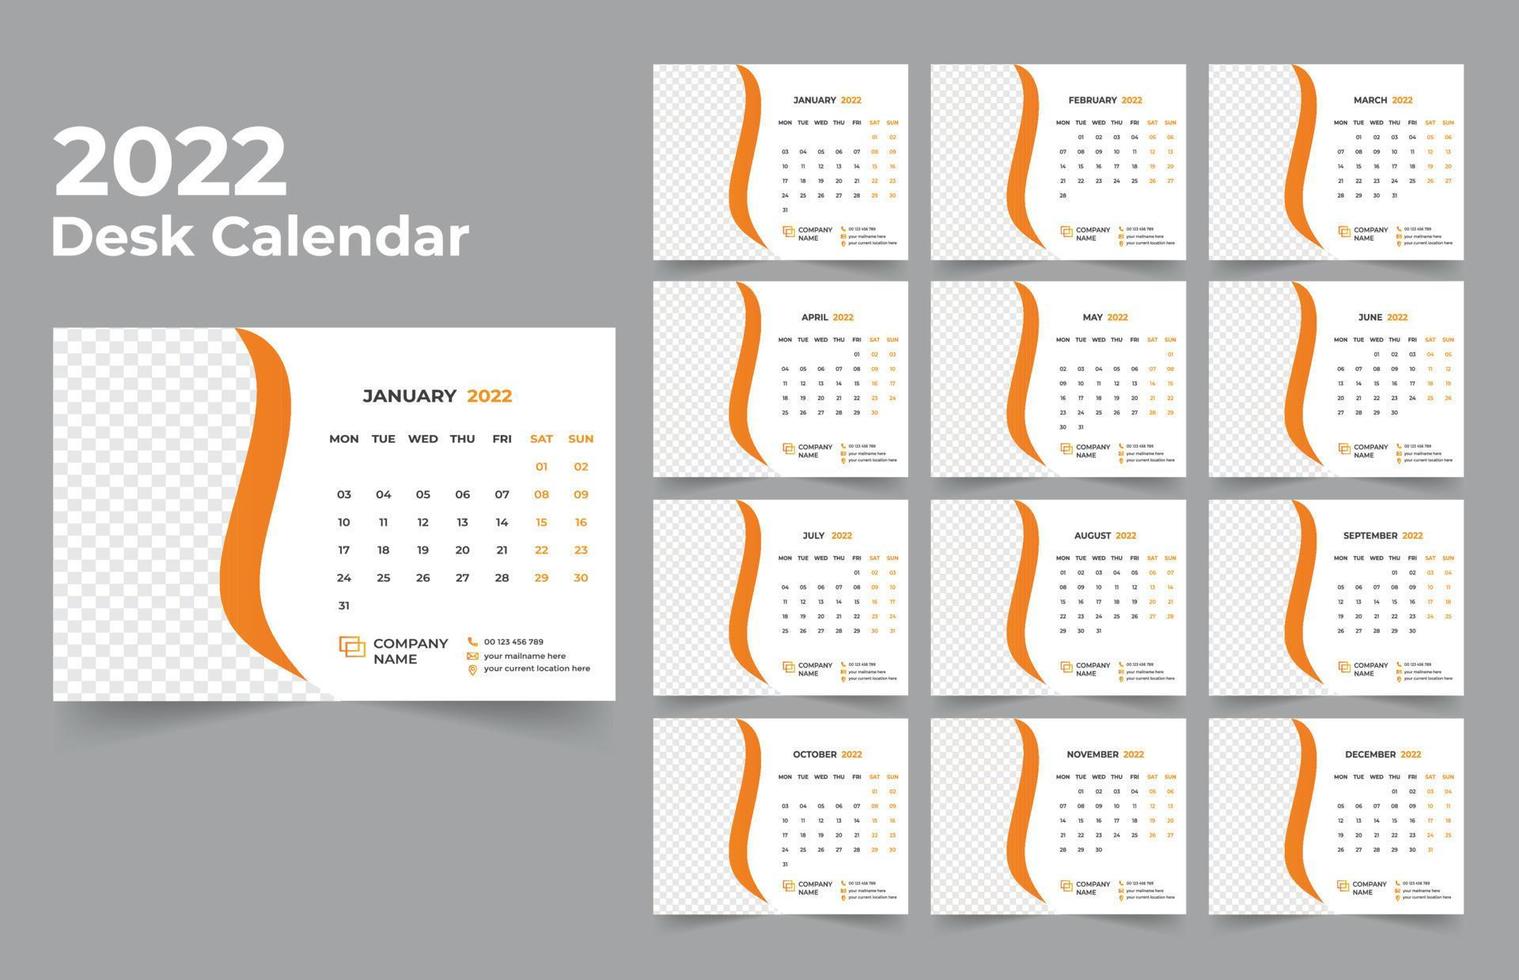 modelo de design de calendário de mesa 2022 conjunto de 12 meses, semana começa na segunda, design de papelaria, planejador de calendário vetor